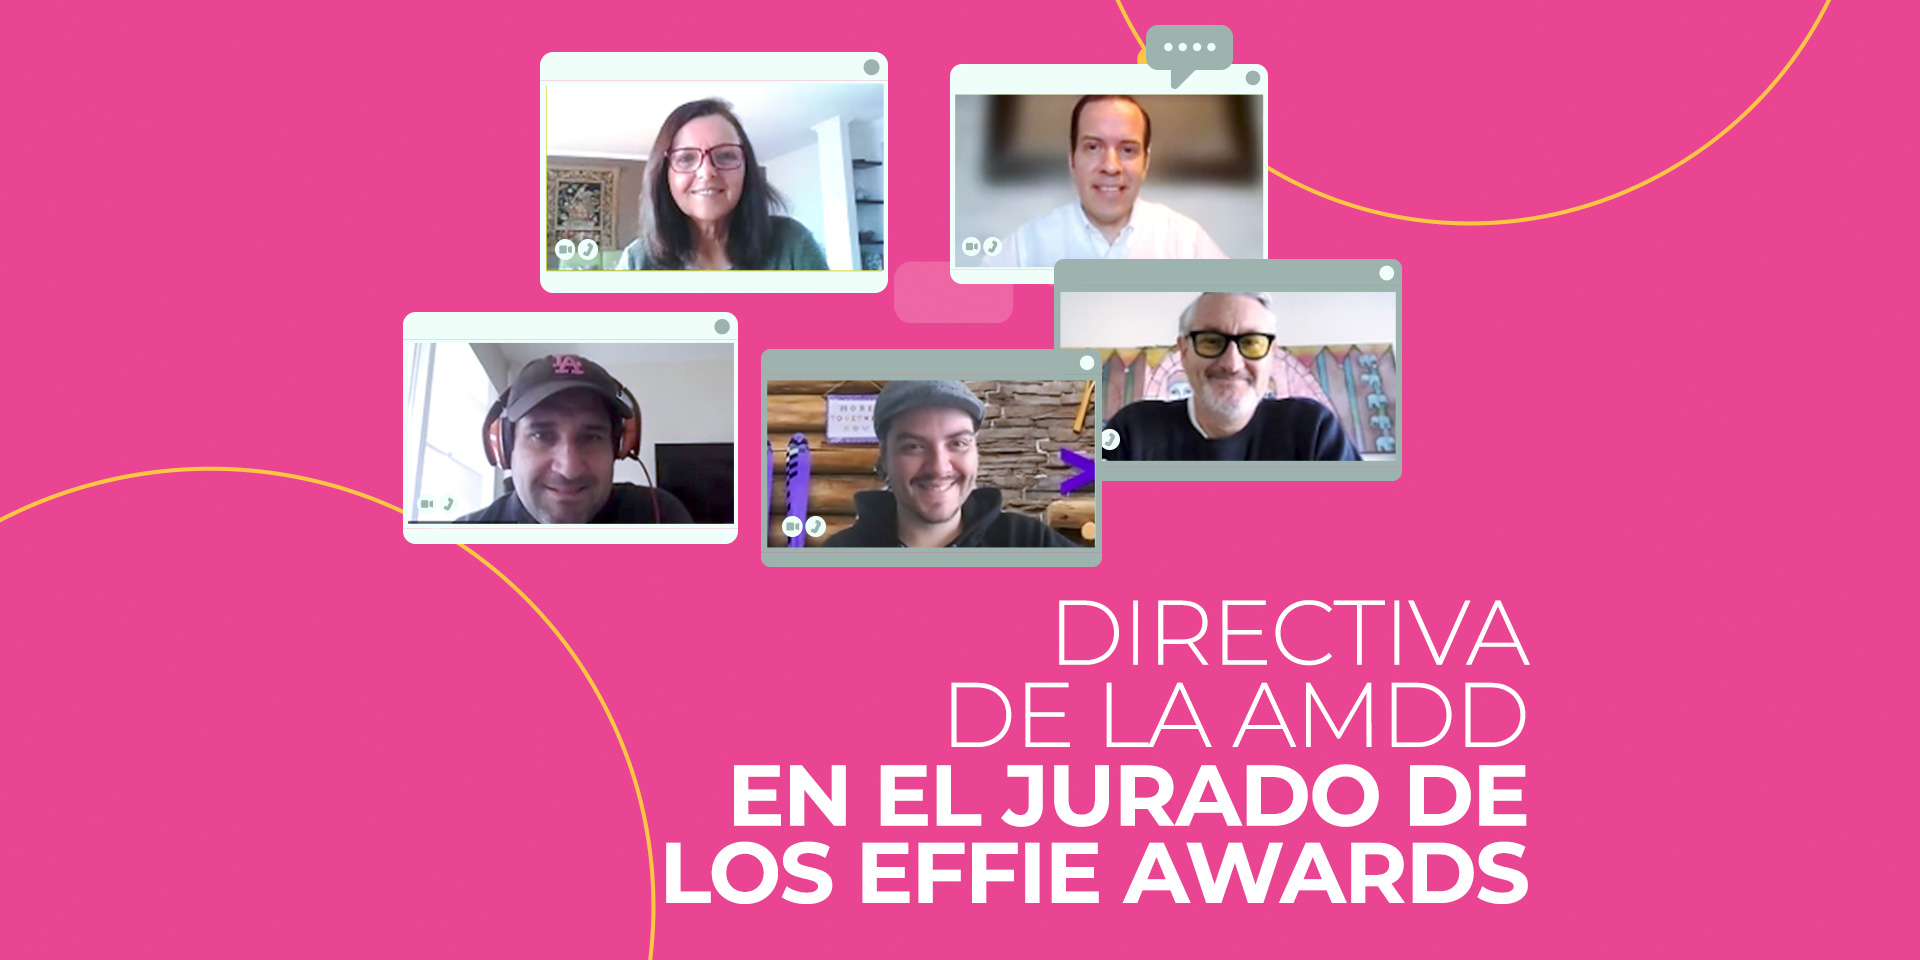 Directiva de la AMDD en el jurado de los Effie Awards 2021